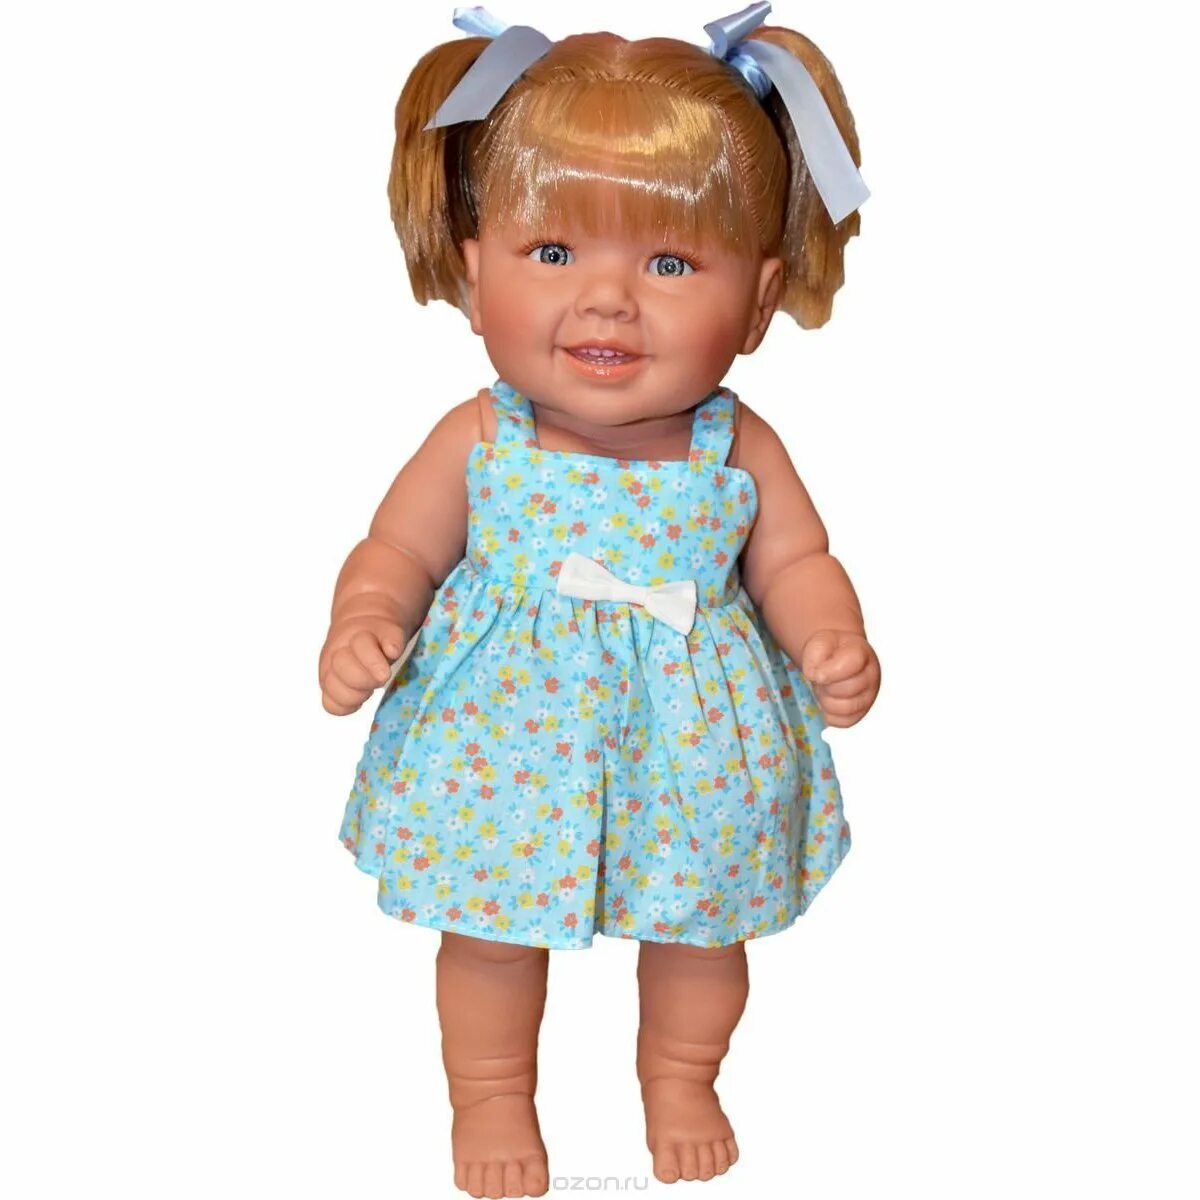 Купить куклу 50 см. Куклы Маноло Доллс. Munecas Manolo Diana. Кукла 50 см.